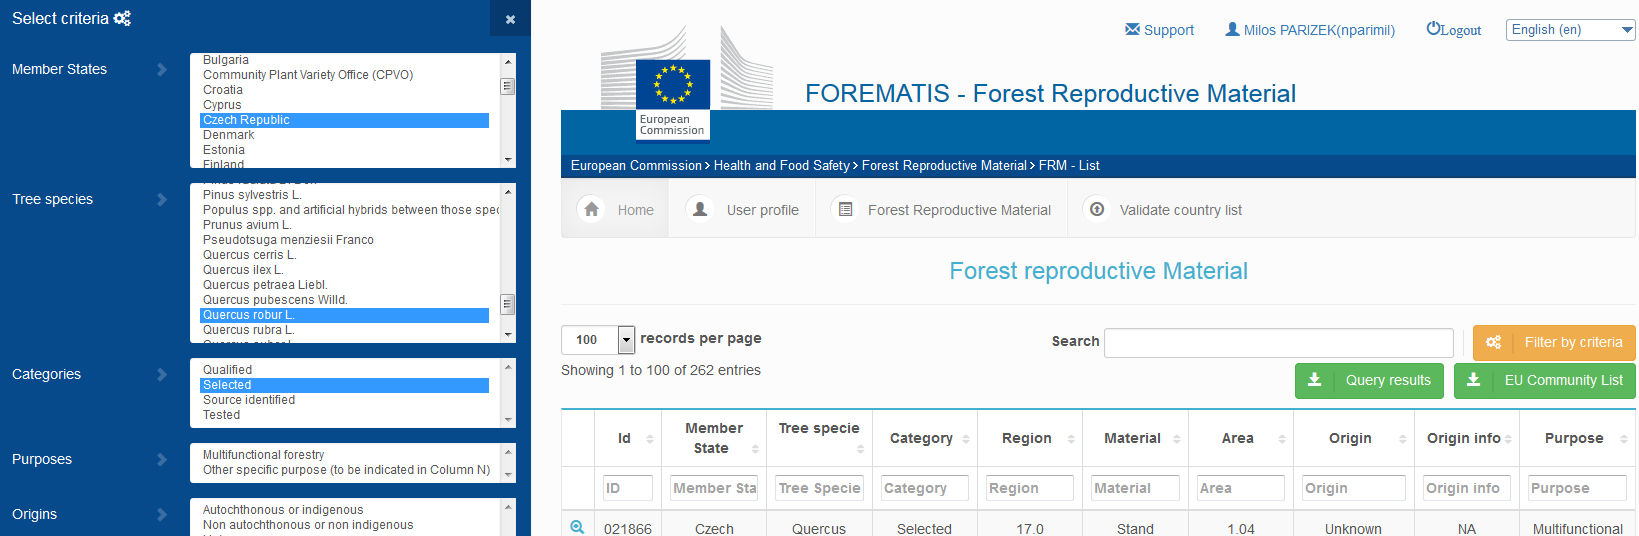 Informace o nakládání s reprodukčním materiálem lesních dřevin 2015 lesních dřevin, je možné veřejně prohlížet na webové adrese